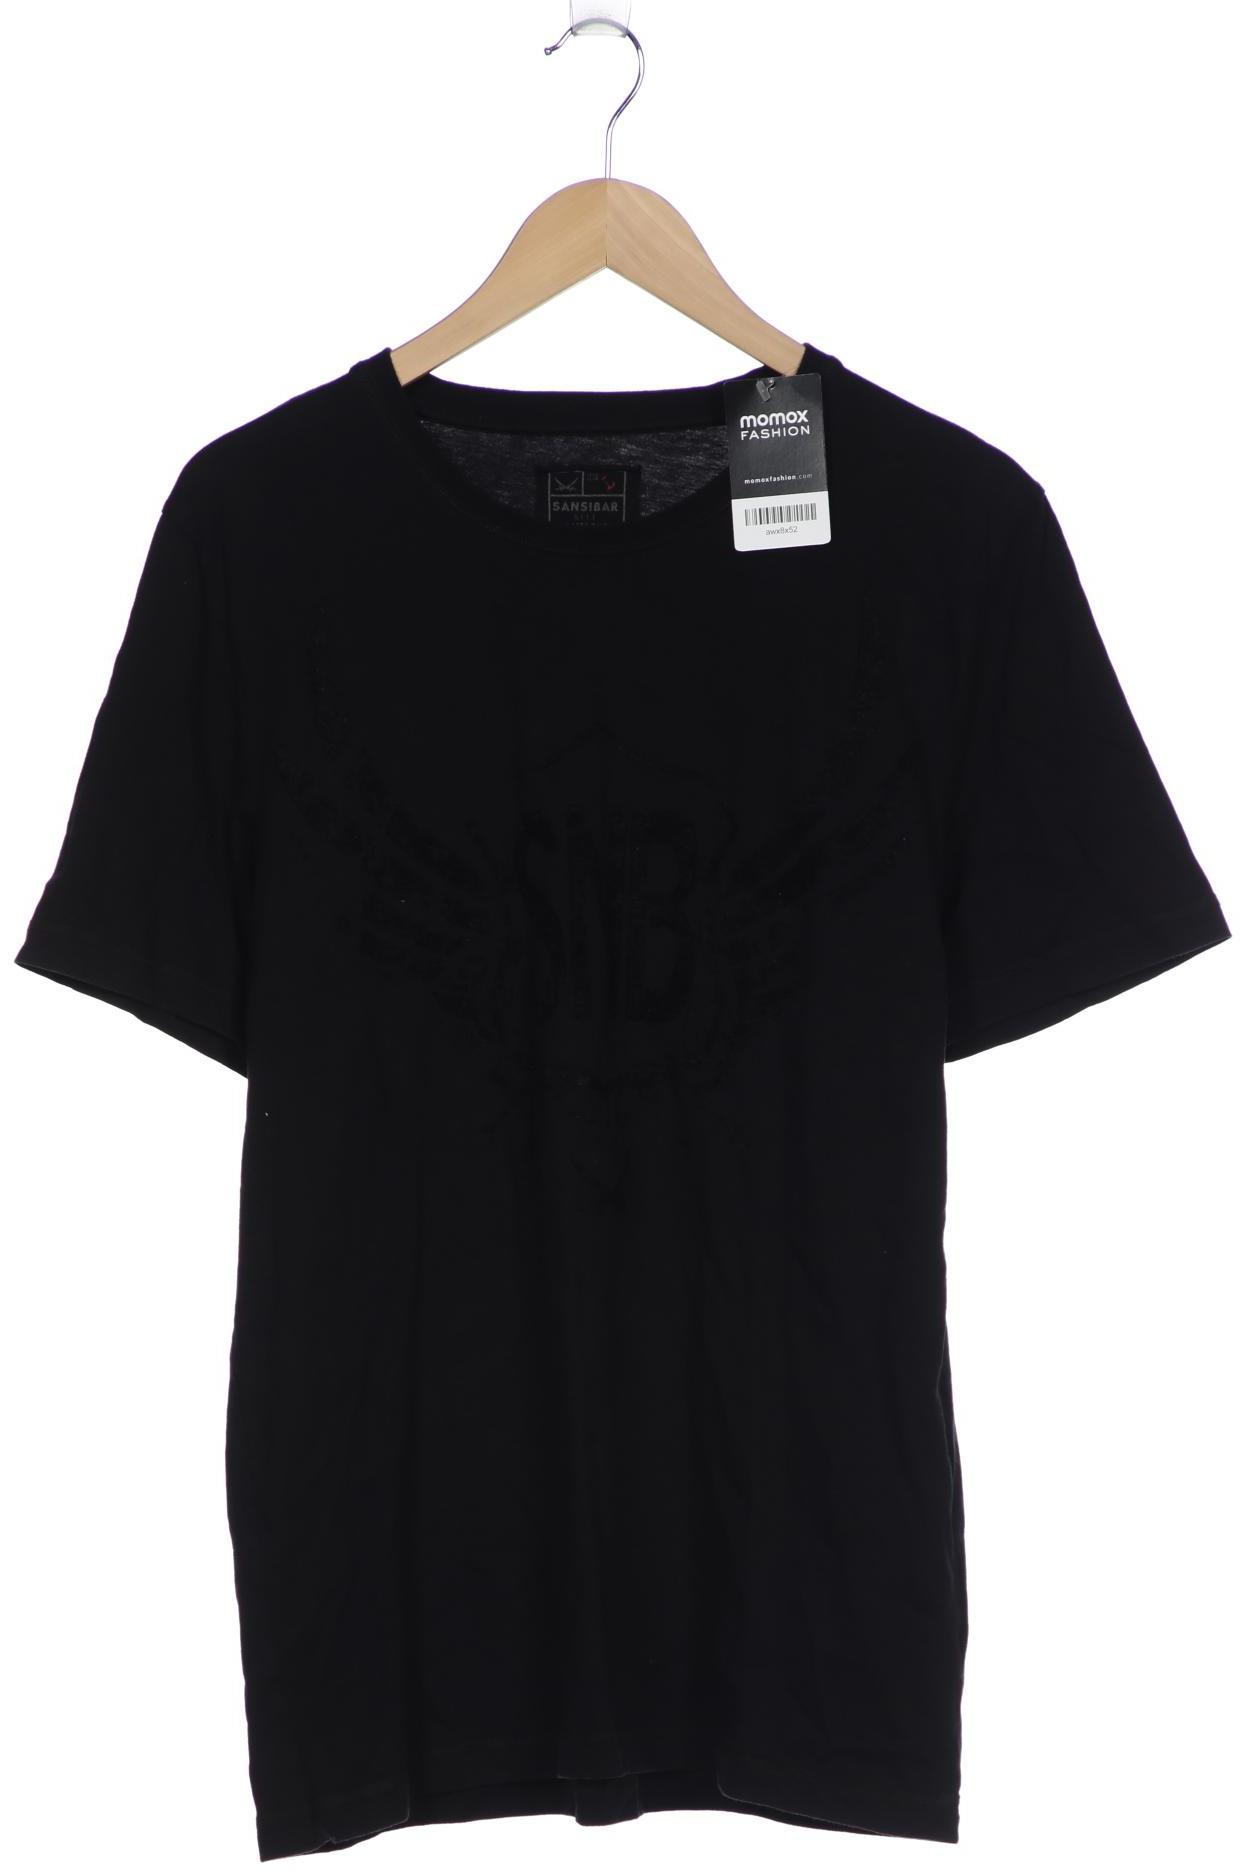 Sansibar Herren T-Shirt, schwarz, Gr. 52 von Sansibar